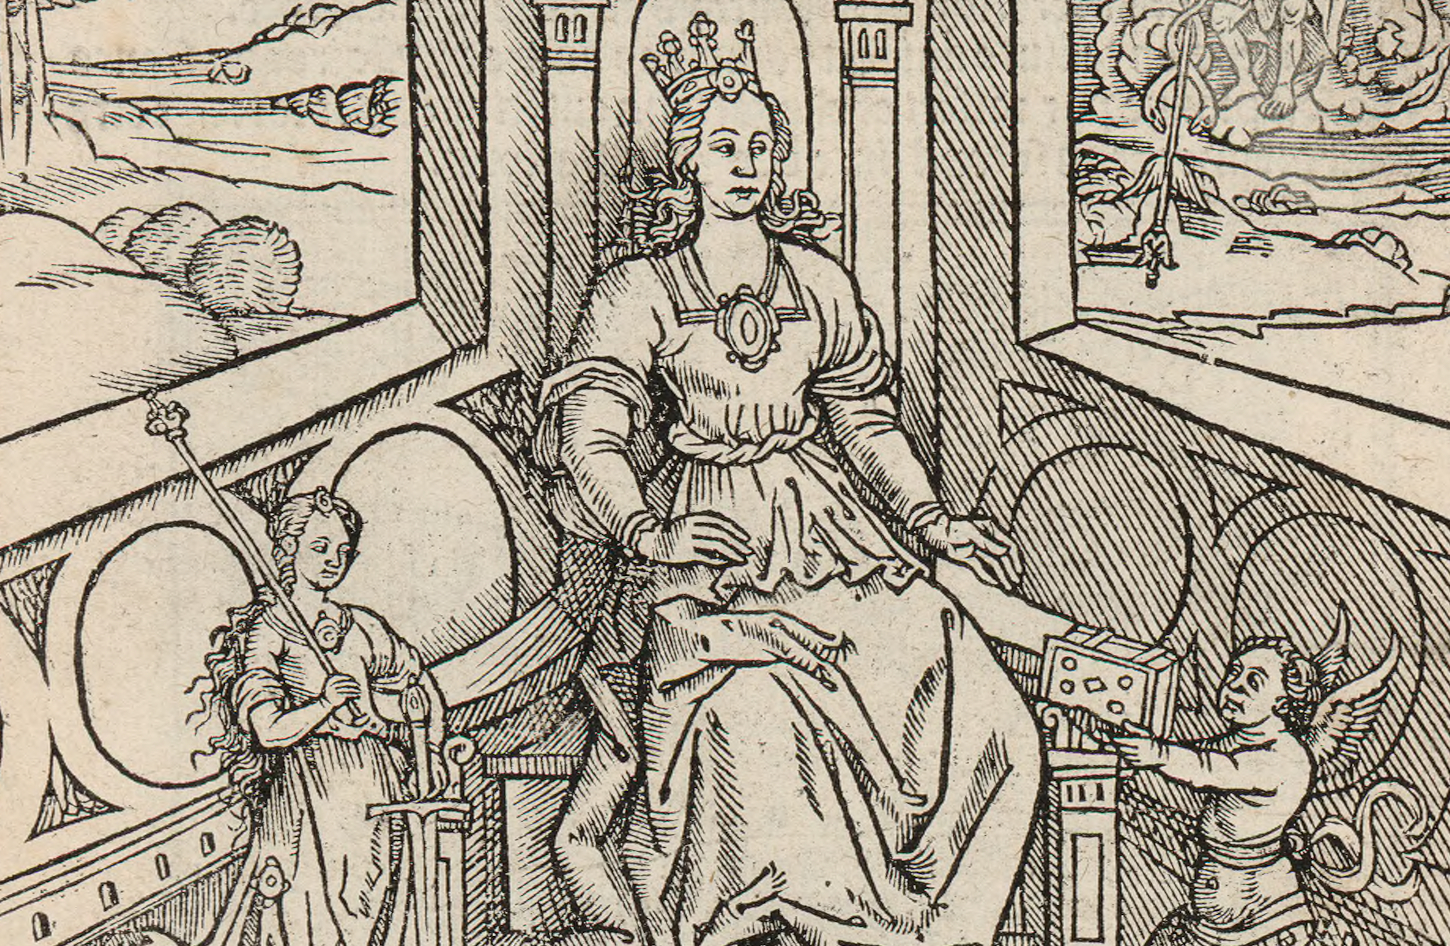 Anne de Bretagne sur son trône, estampe du XVIe siècle (détail). Gallica / Bibliothèque nationale de France: Estampes et photographie, RESERVE FOL-QB-201 (3).